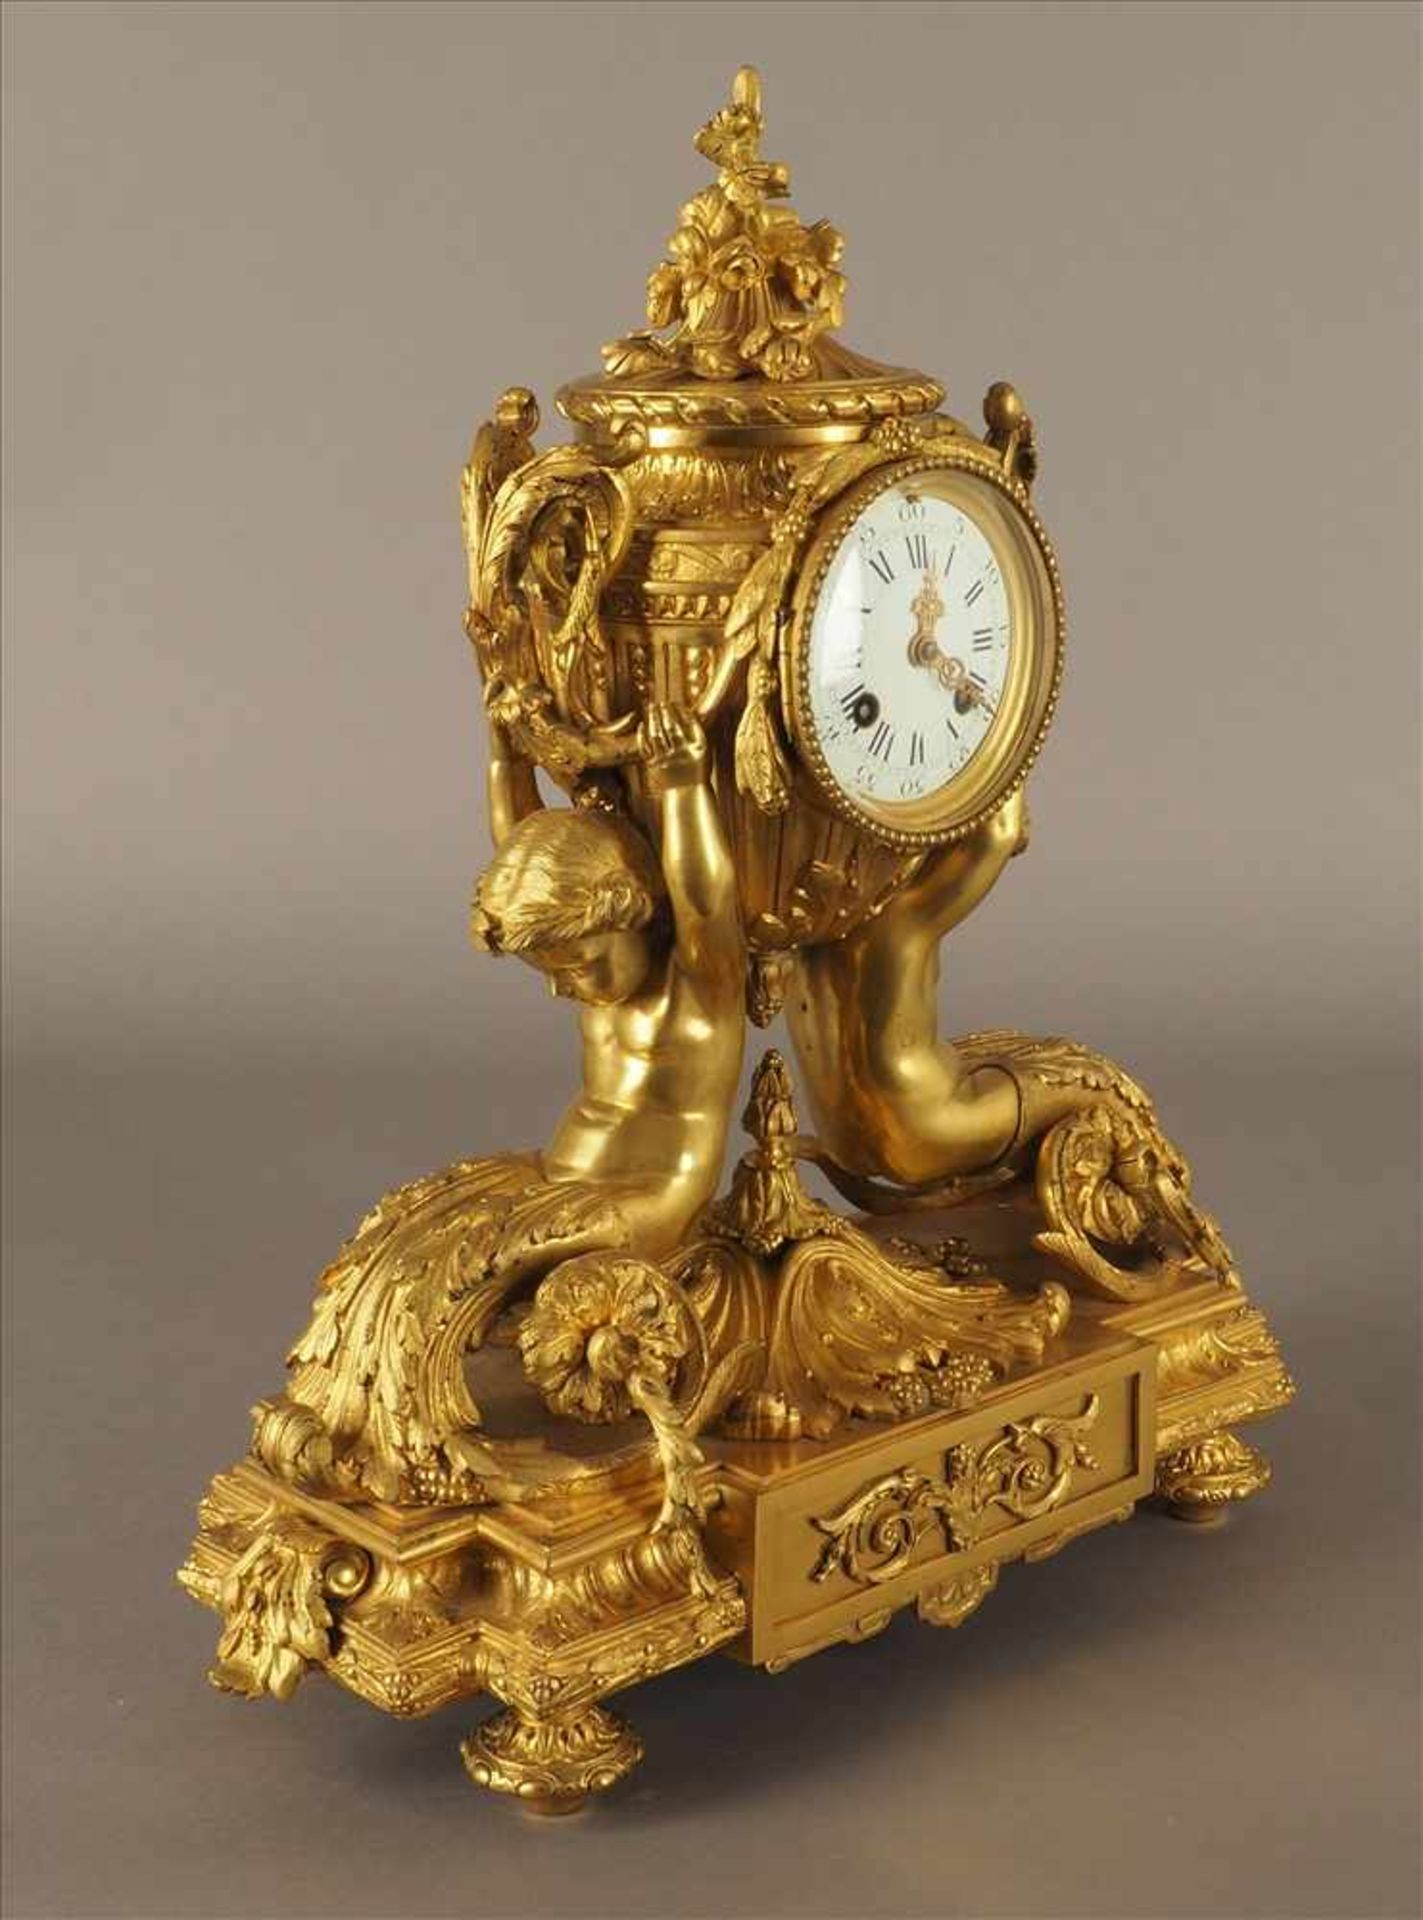 Feuervergoldete PrunkuhrVon Putten getragen, Bronze, feuervergoldet, 19.Jh., Pendel fehlt, Uhrwerk - Bild 2 aus 5